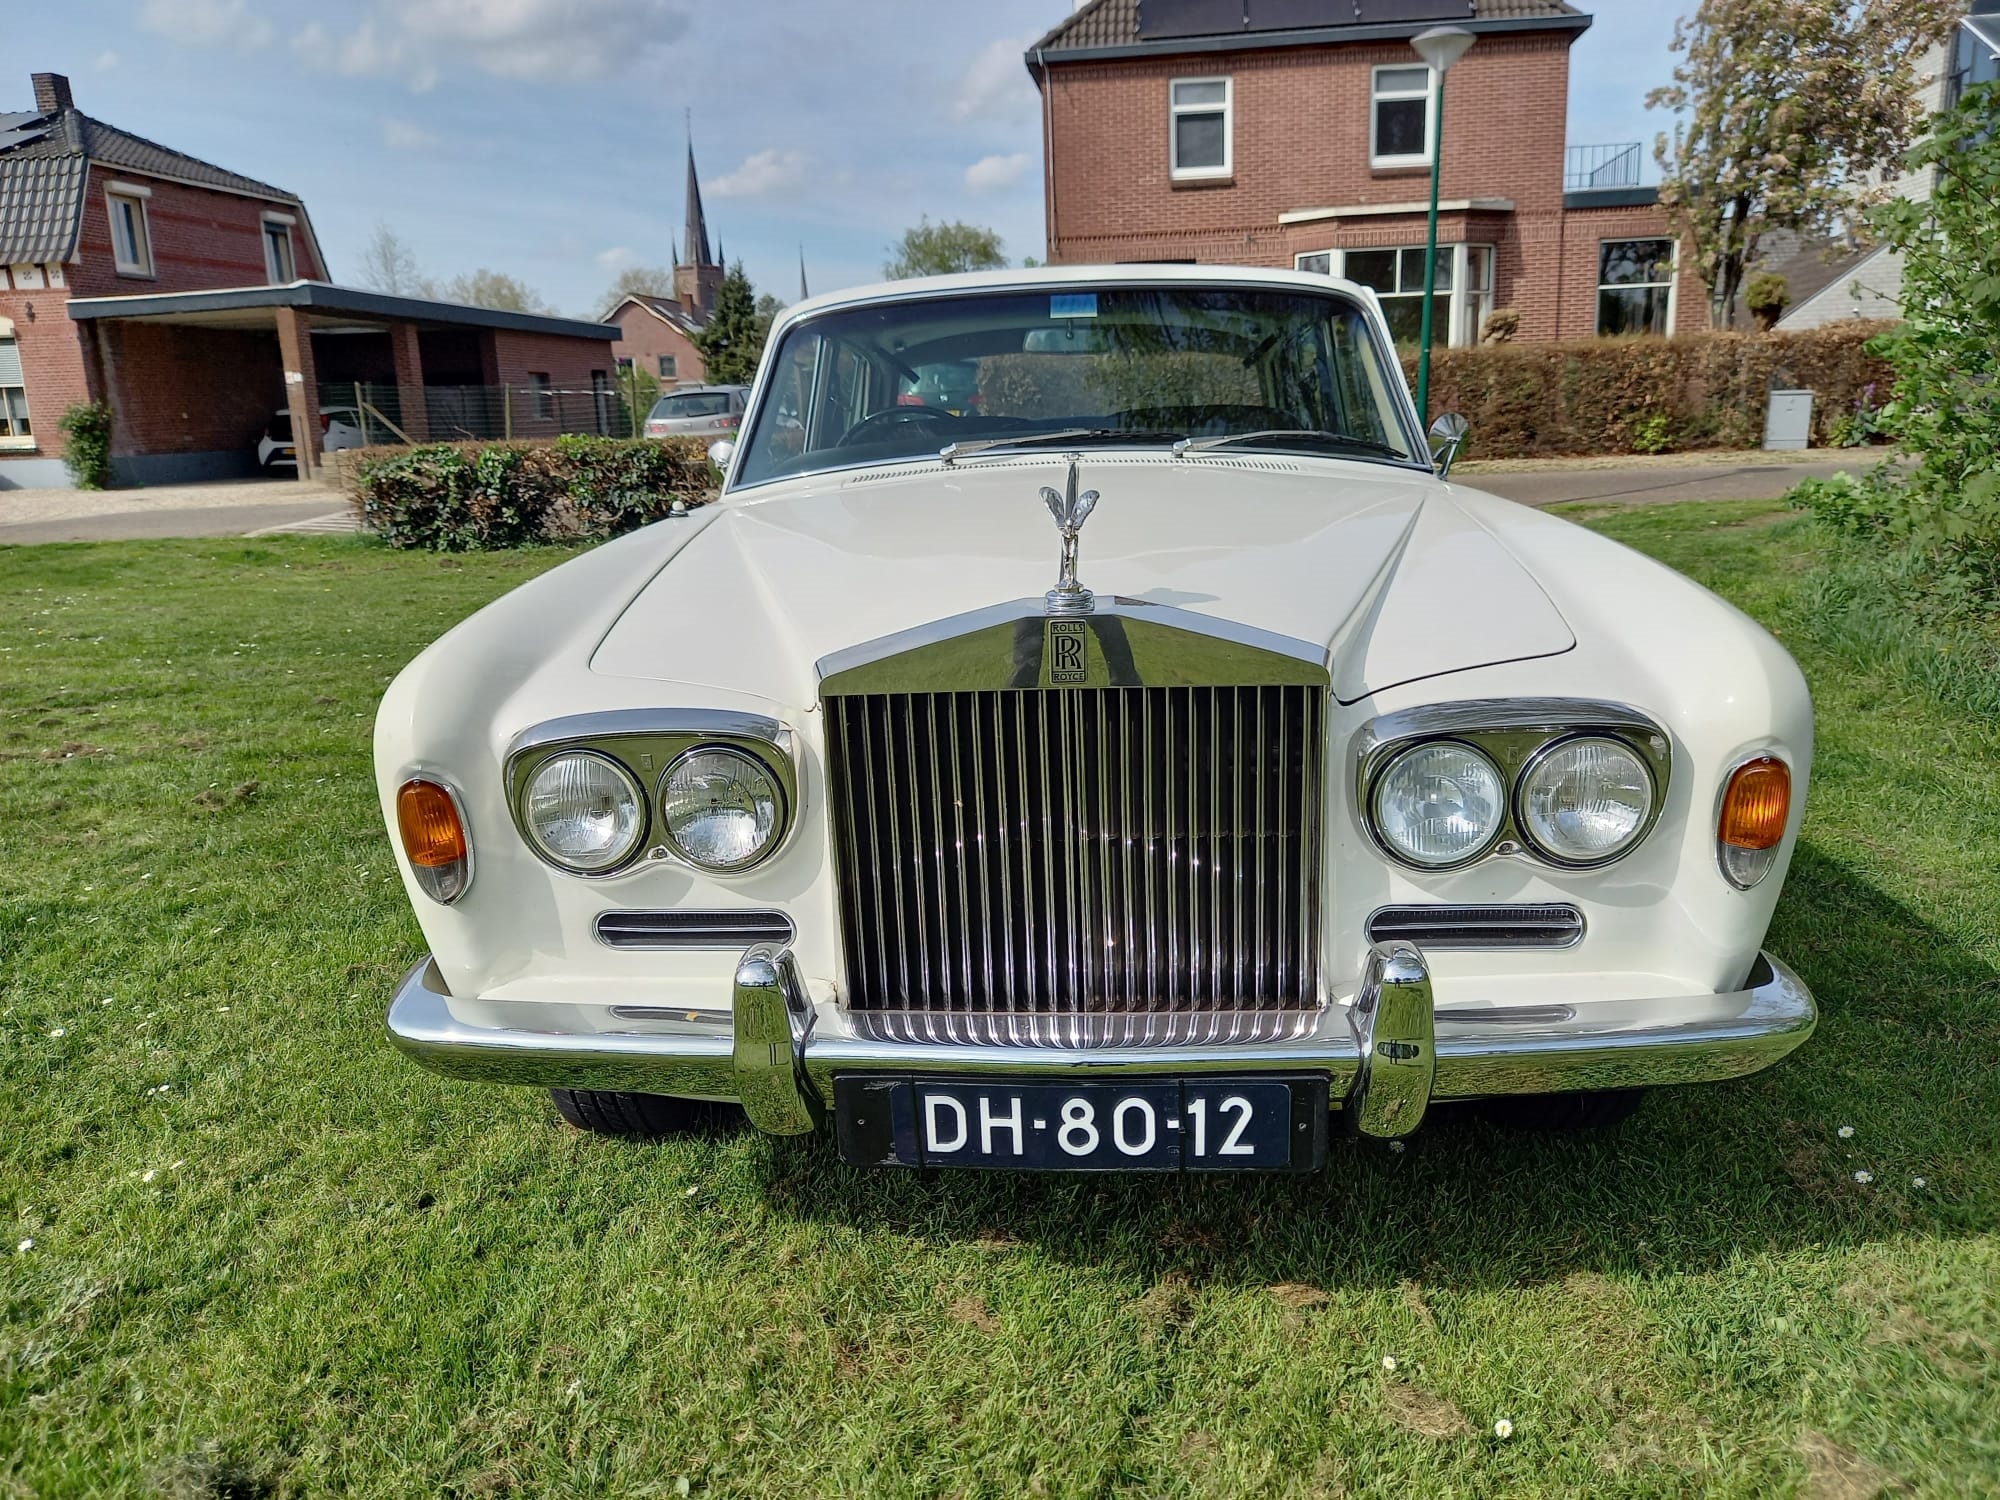 1972 Rolls-Royce Silver Shadow Type I | 04-1972 oldtimer te koop